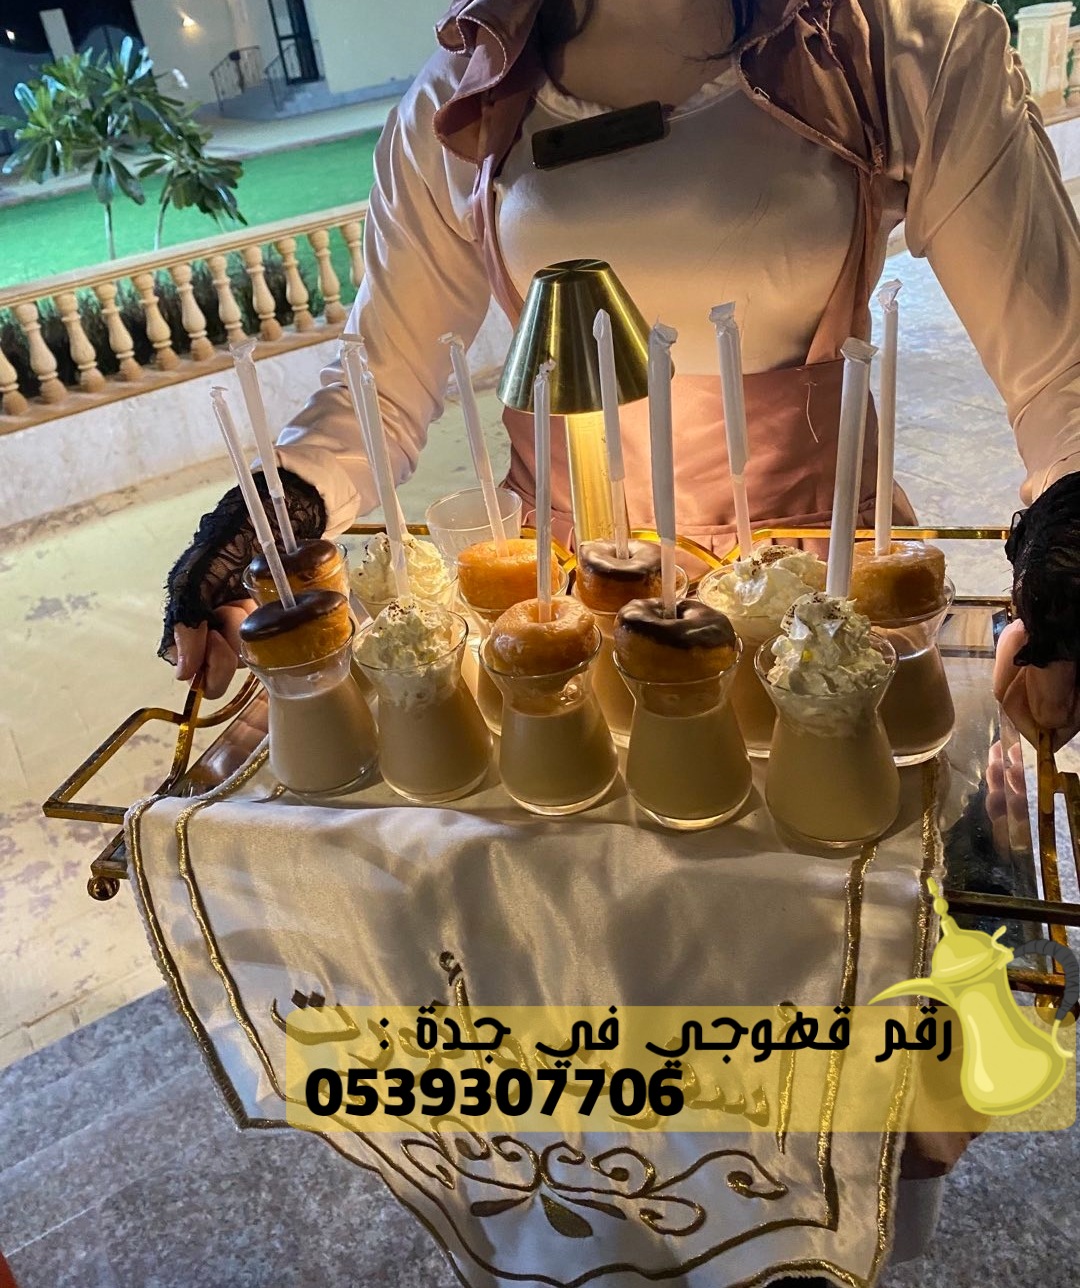 صبابات قهوة في جدة للضيافة, 0539307706